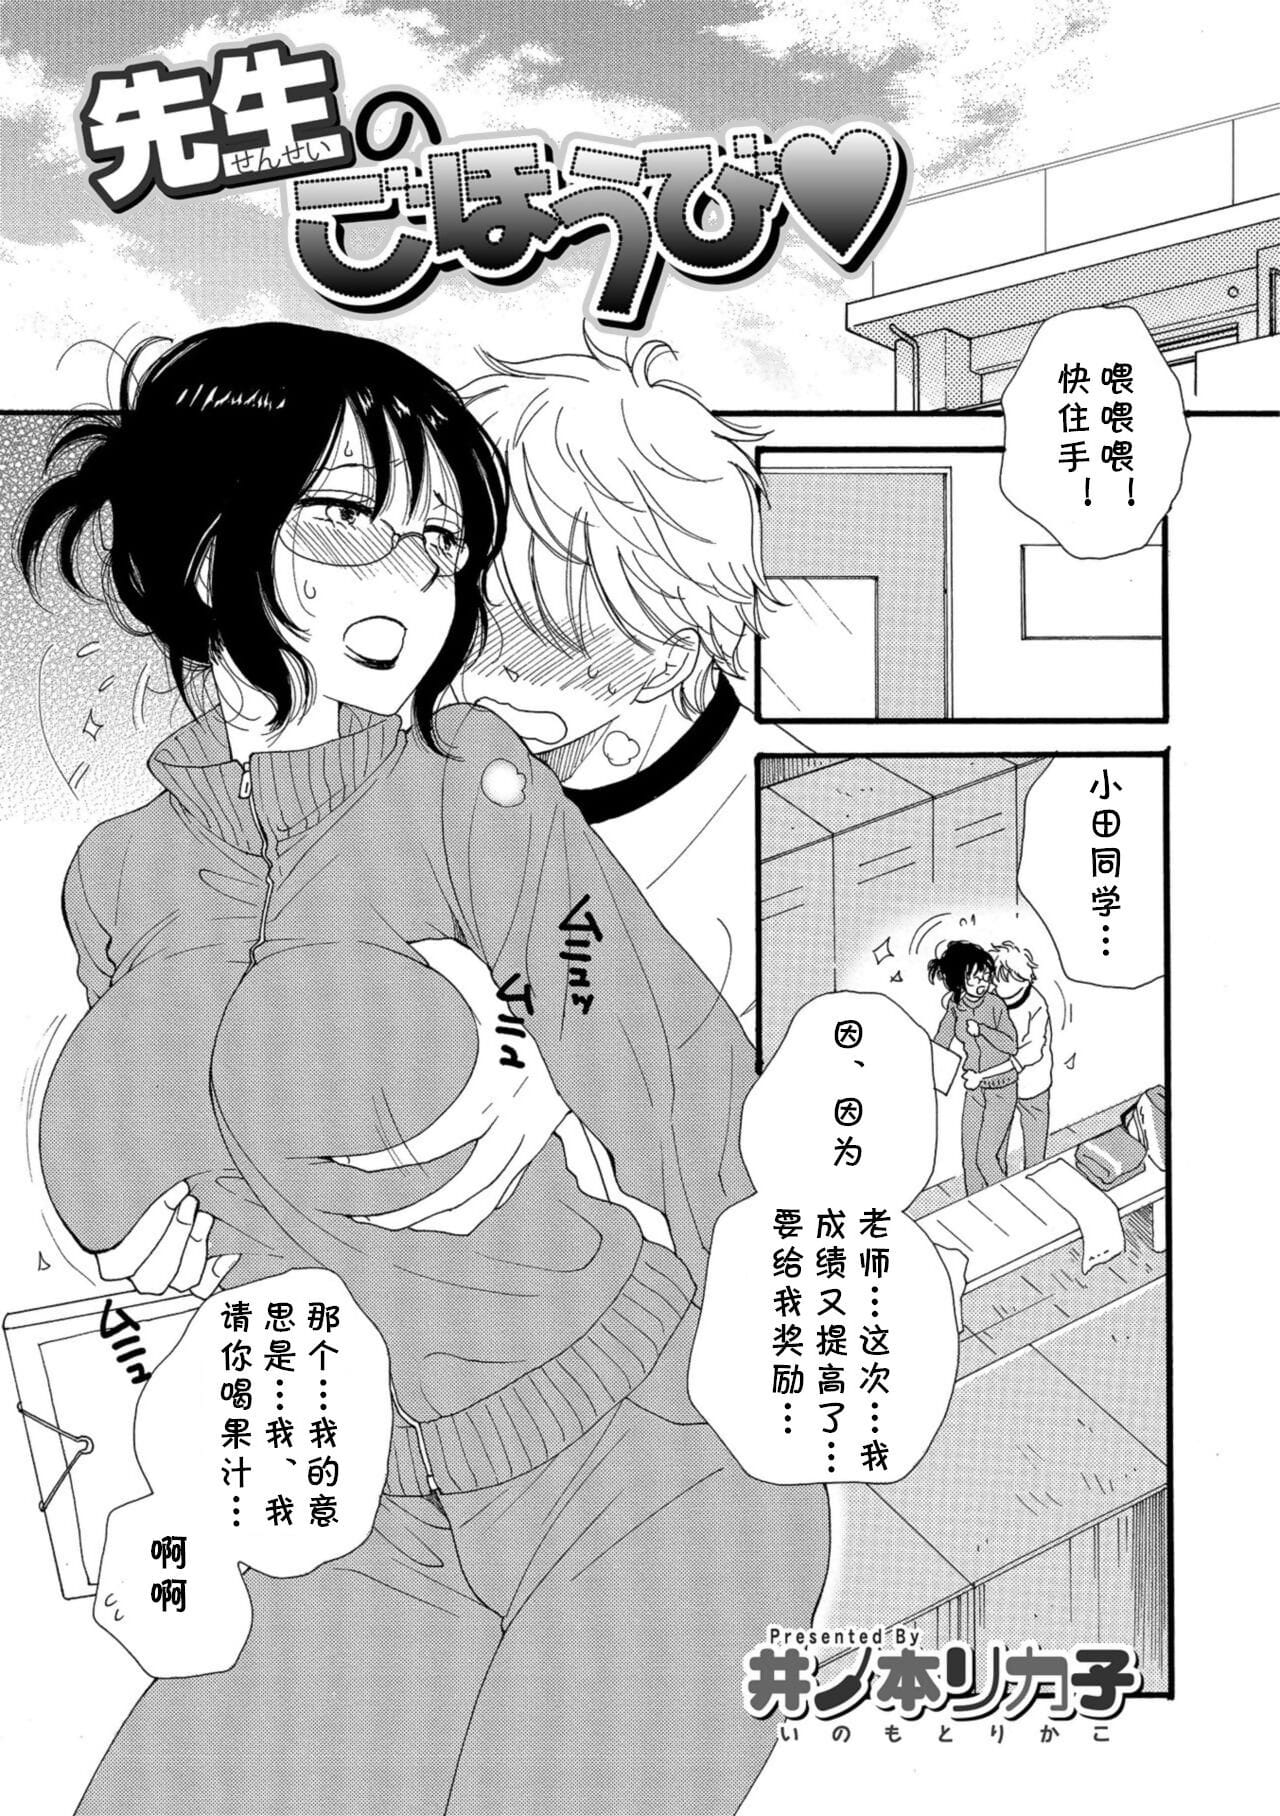 Sensei no Gohoubi page 1